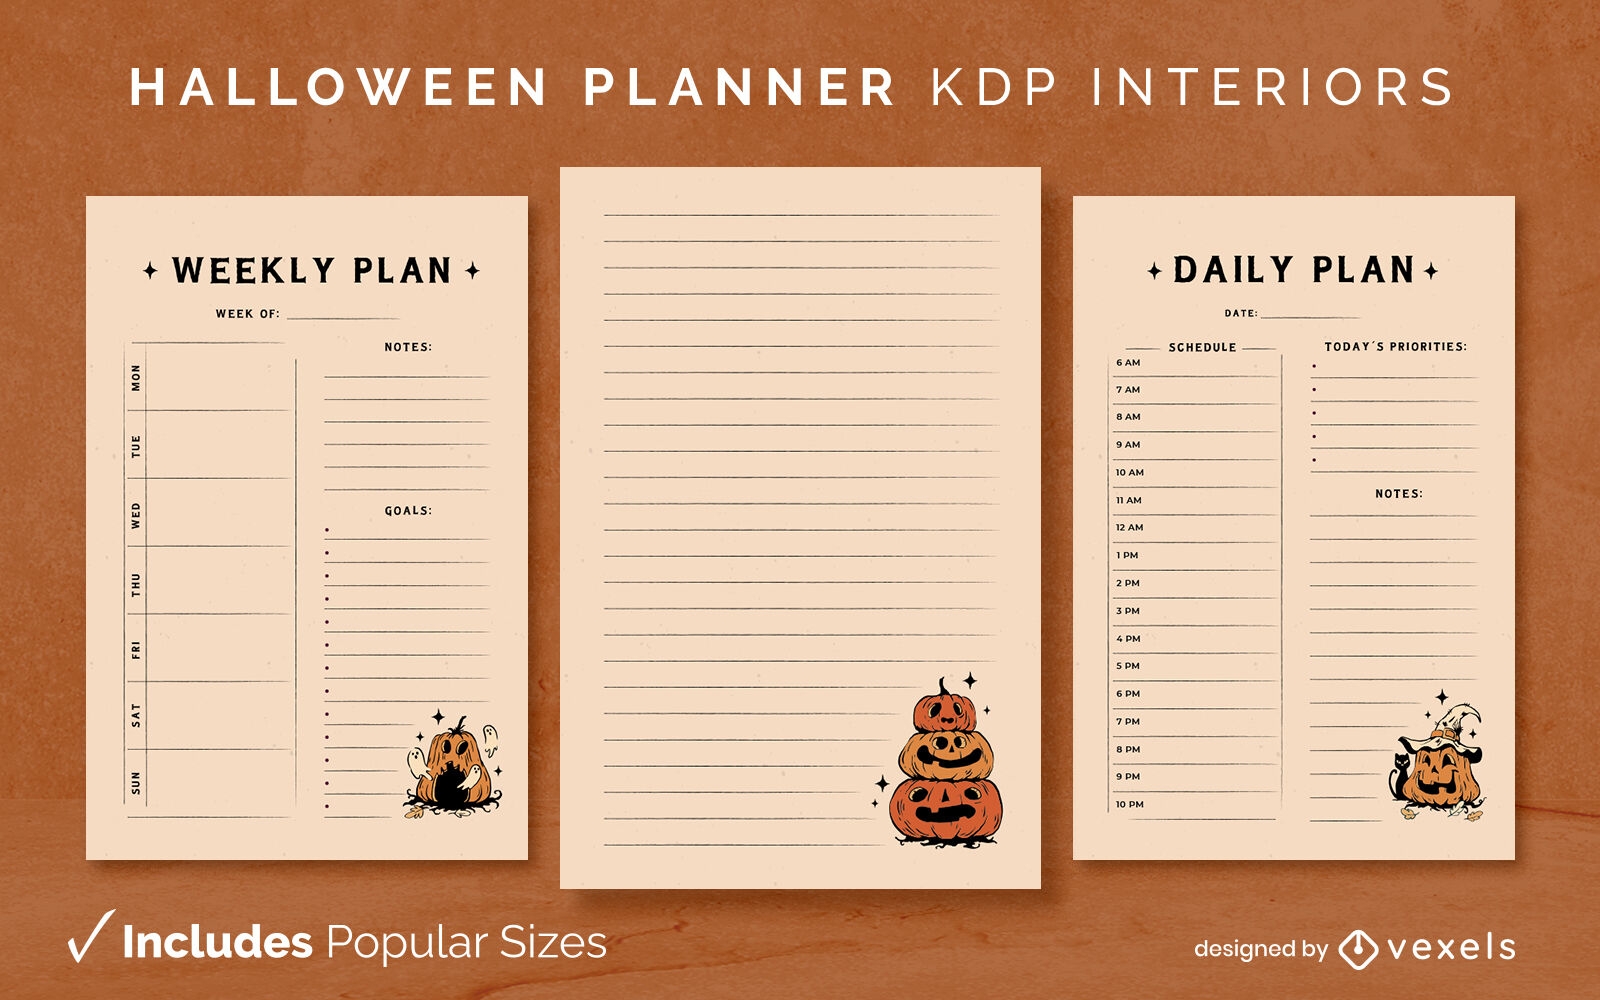 Plantilla de diario de calabazas de planificador de Halloween Diseño de interiores KDP